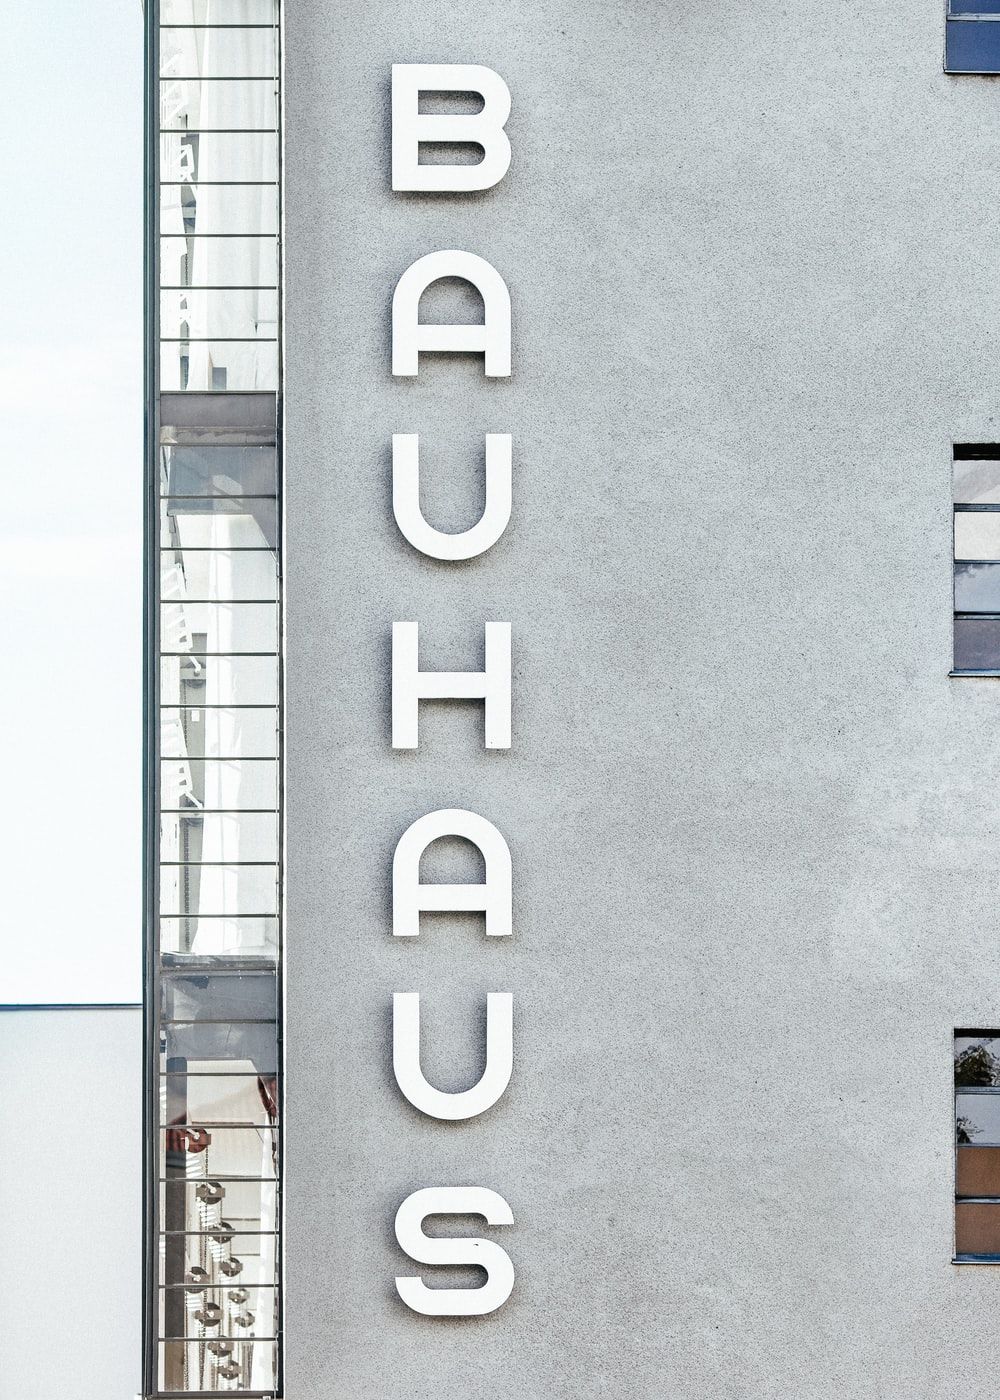 Bauhaus Picture. Download Free Image